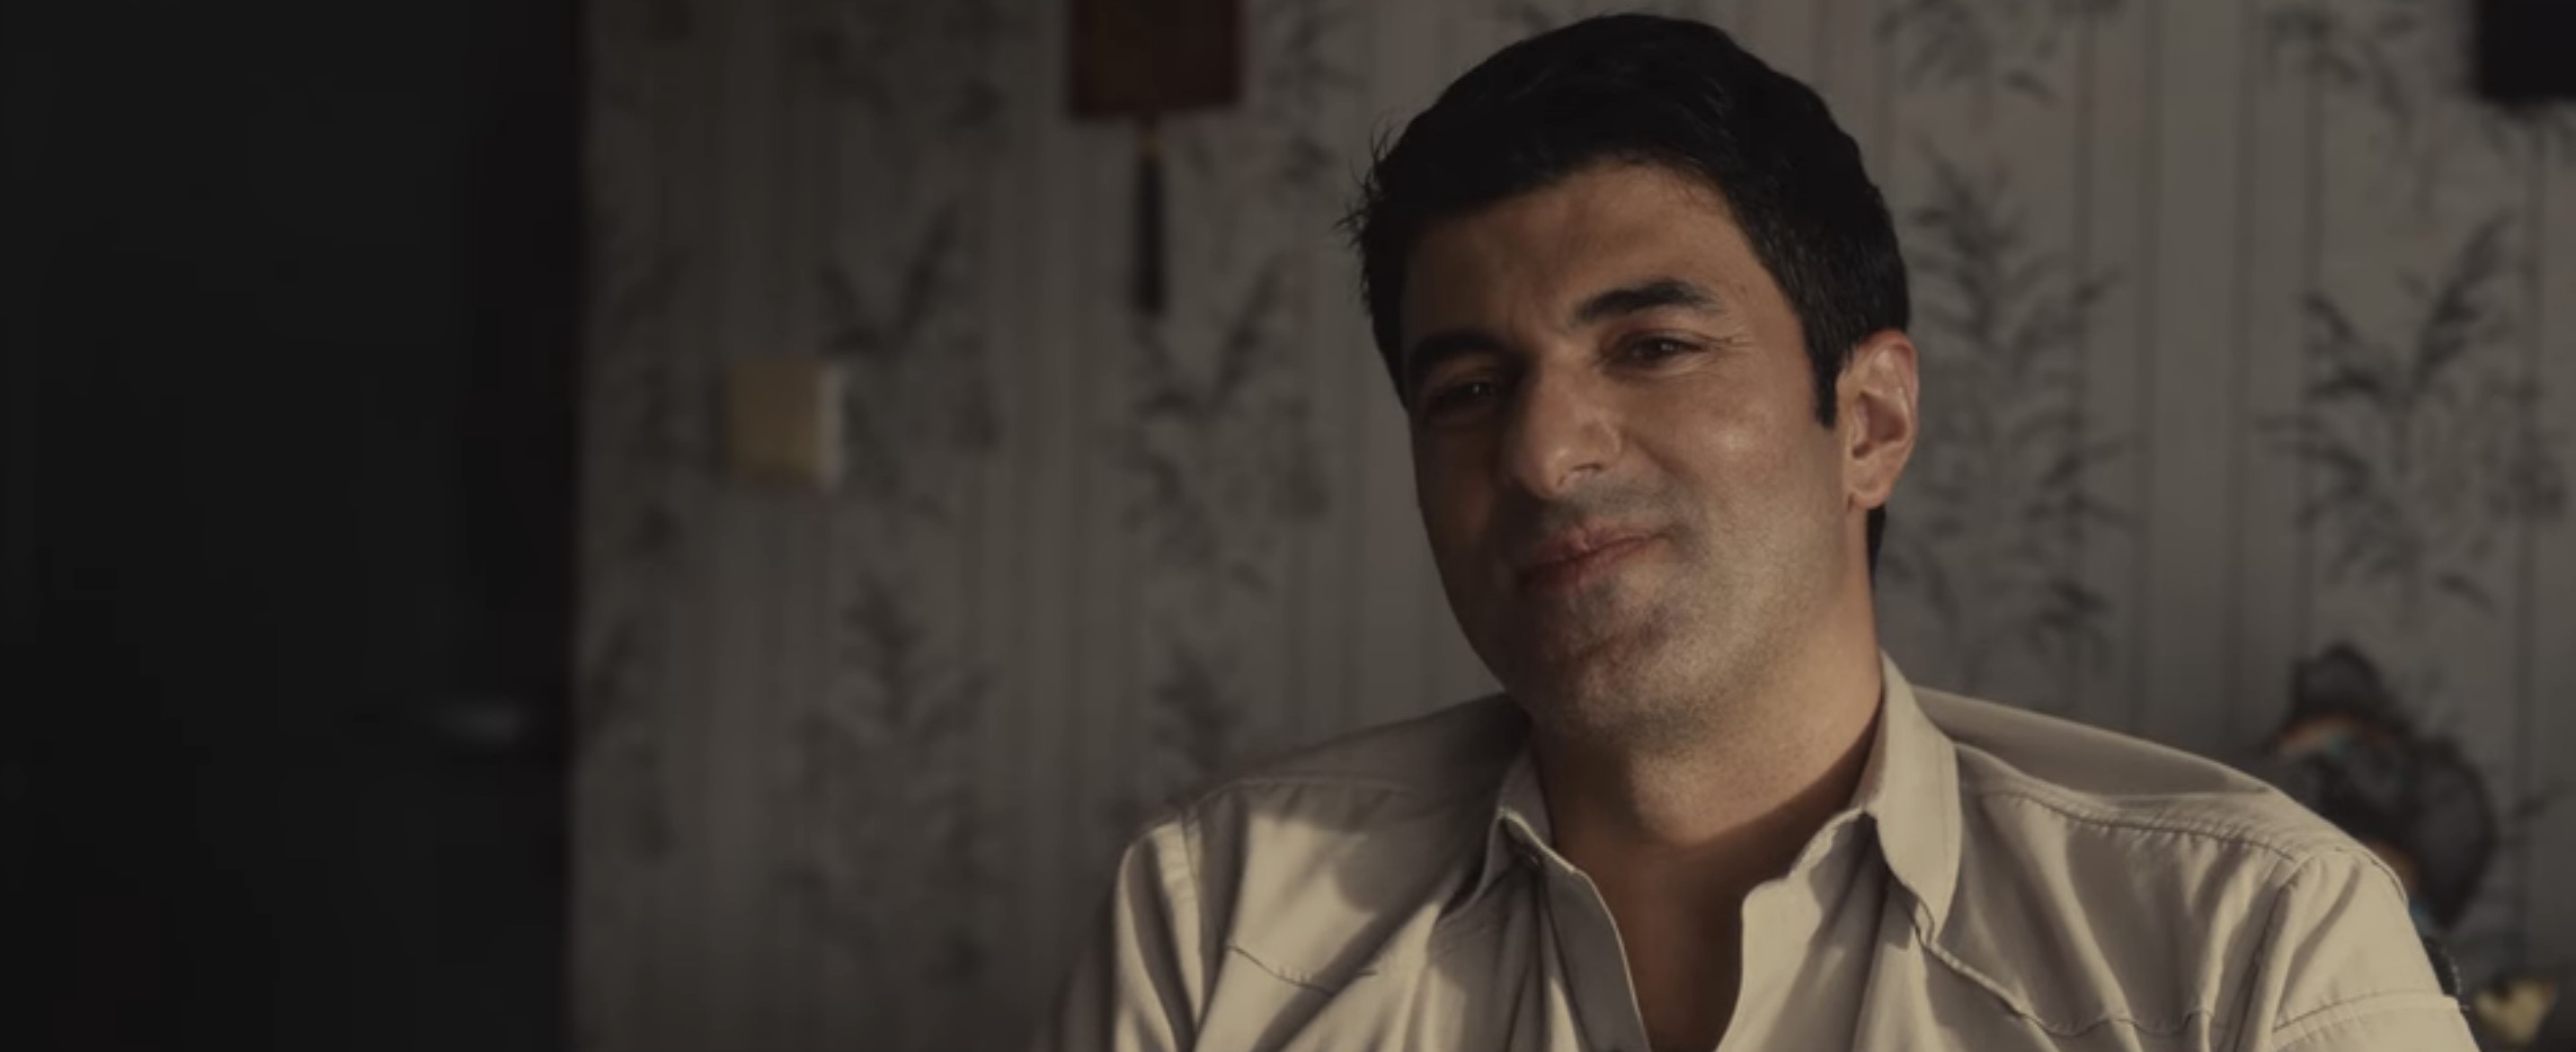 Godspeed Cast on Netflix - Engin Akyürek as Salih